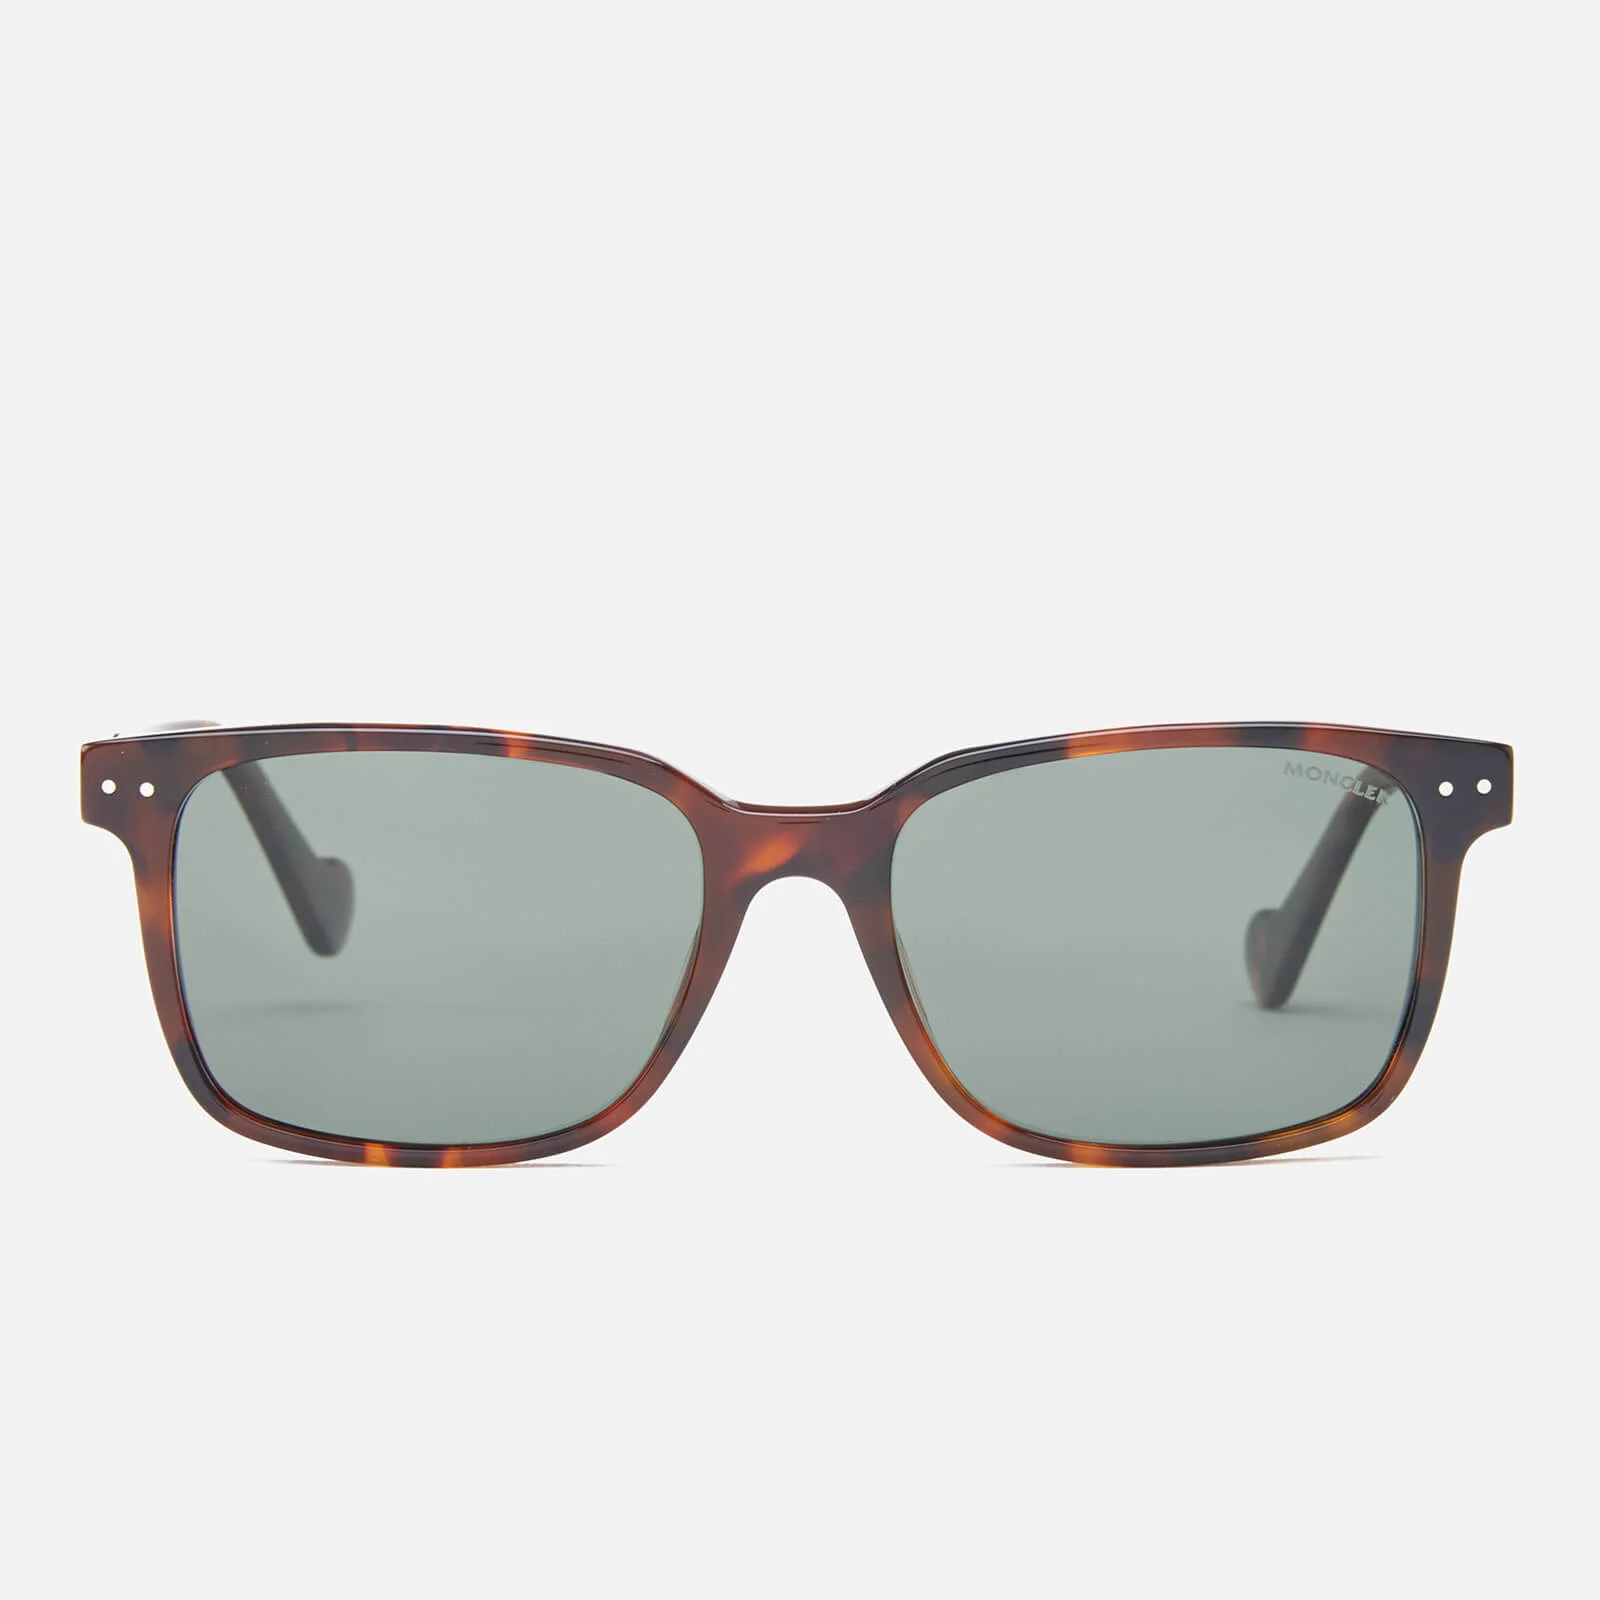 Moncler Men's Square Frame Sunglasses - Tortoiseshell Image 1